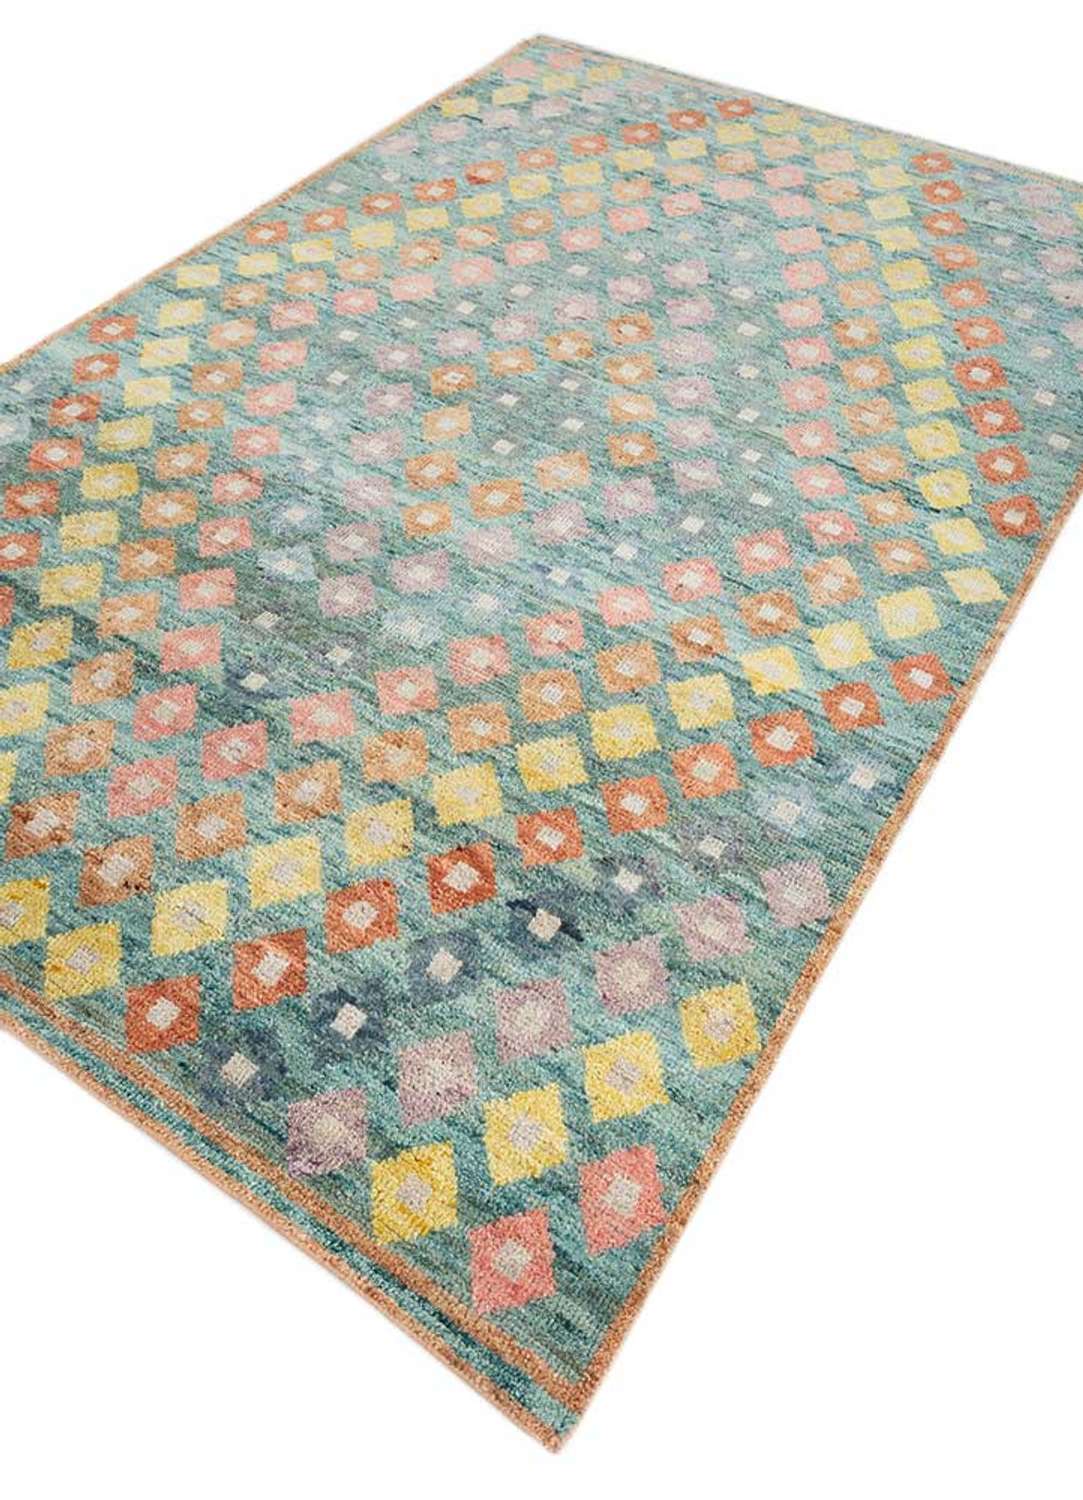 Designový koberec - tainara - obdélníkový